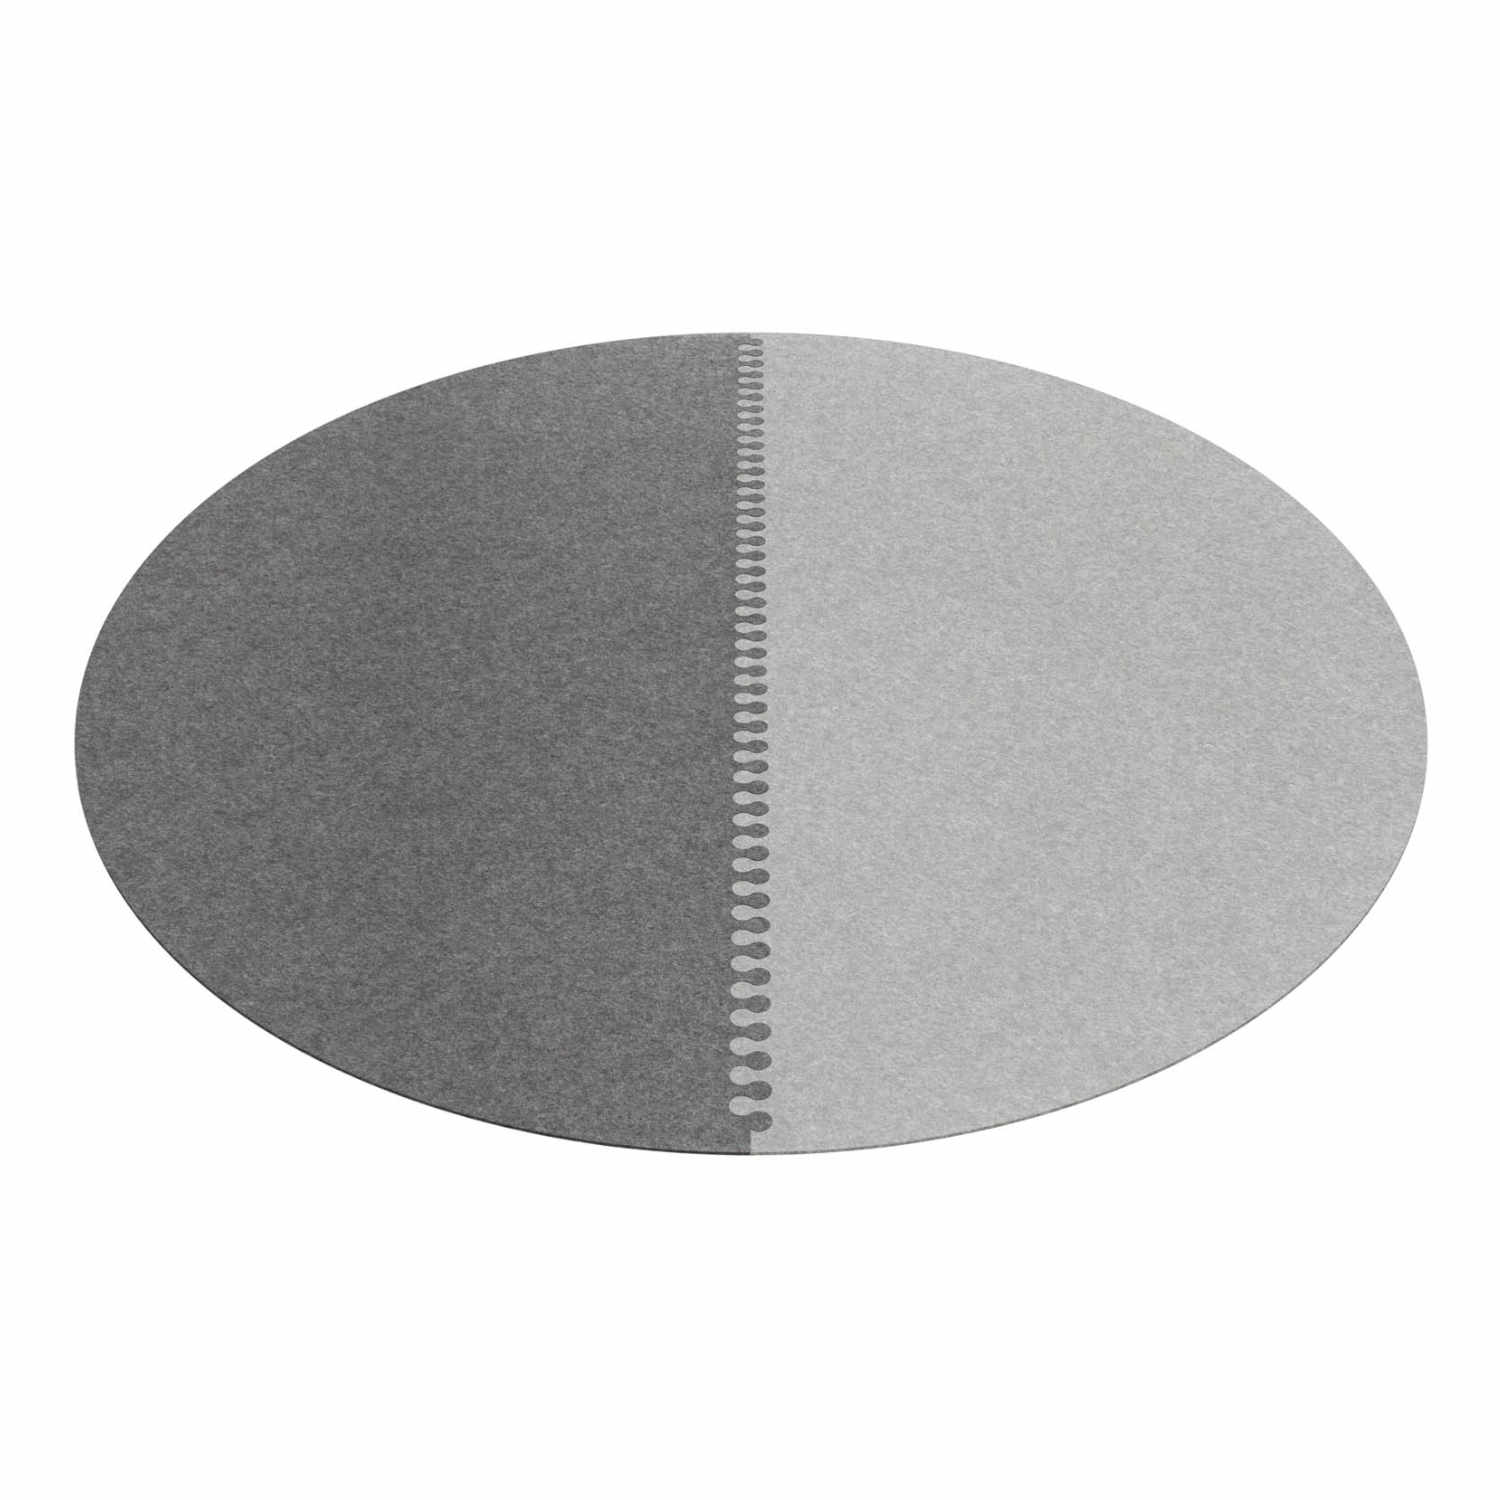 Zipp rund 2-teilig Teppich, Farbe mohnrot, Farbe 2 schwarz 02, Durchmesser 360 cm von HEY-SIGN